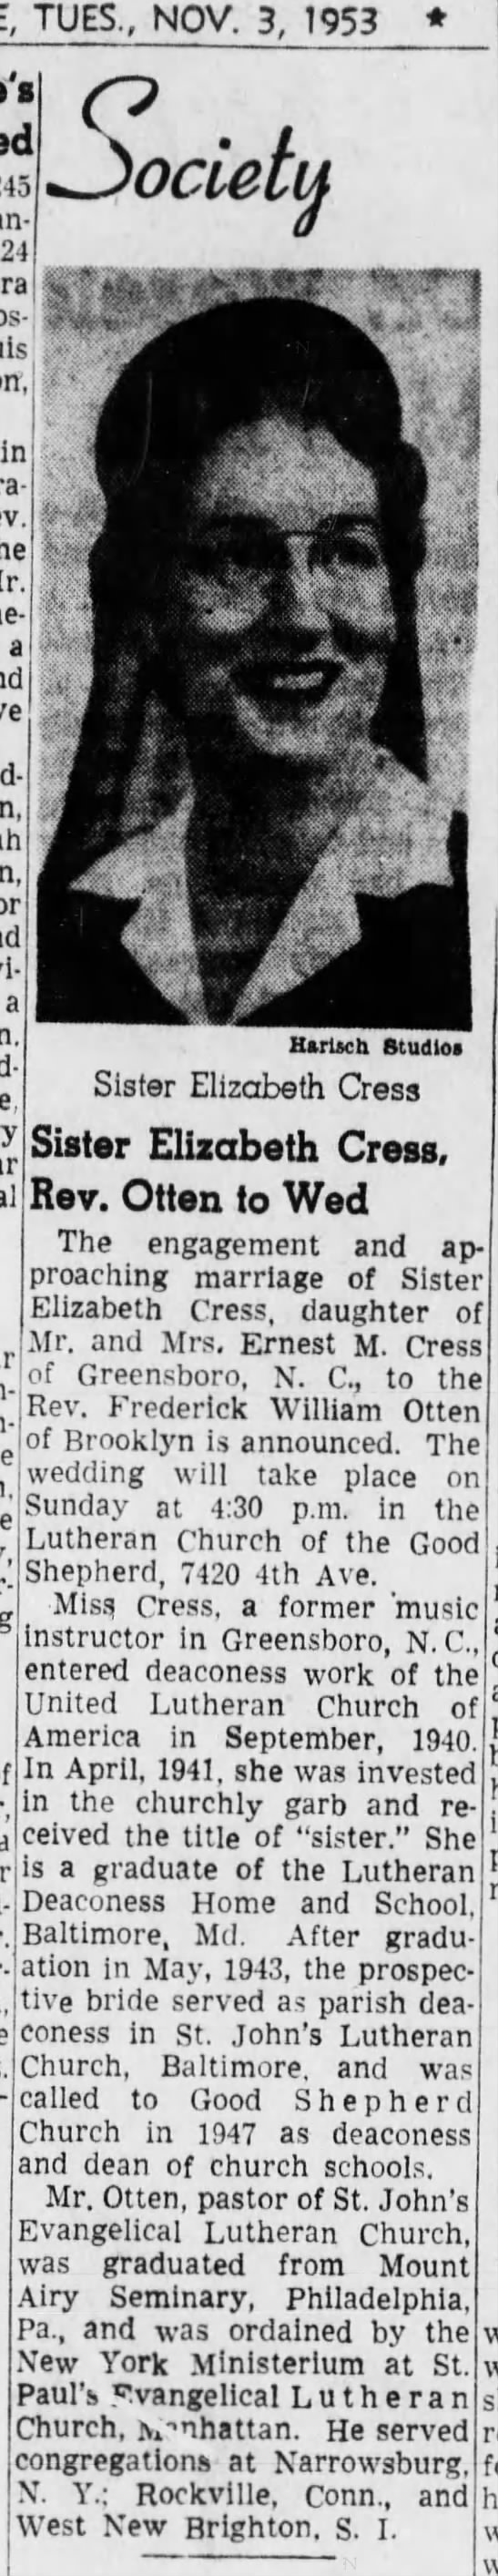 Cress, Elizabeth to wed Rev Frederick William Otten - 07 Nov 1953